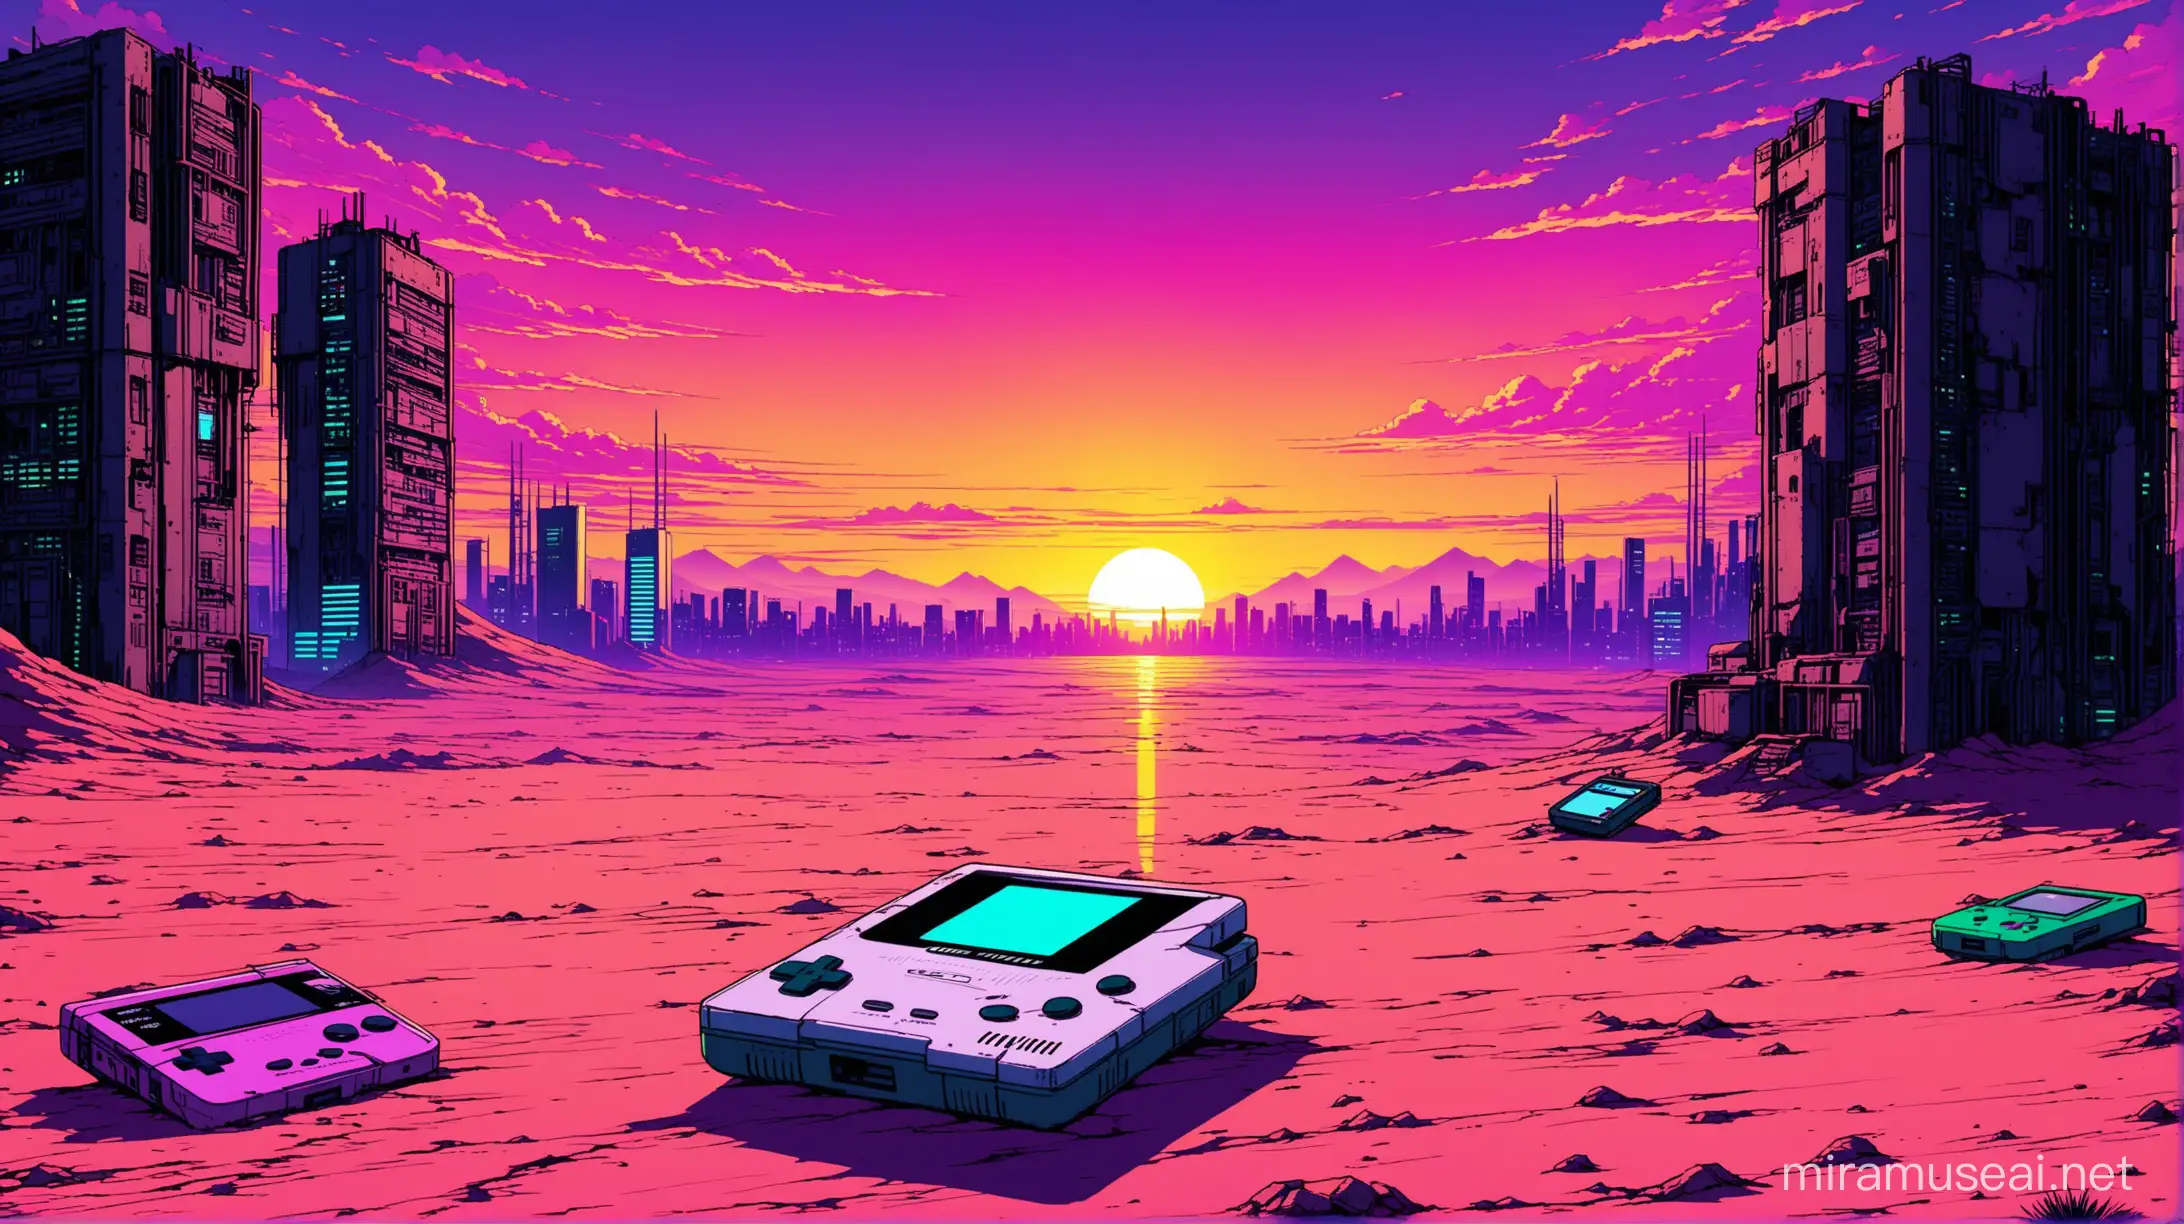 Lost Gameboy in Cyberpunk Desert Sunset